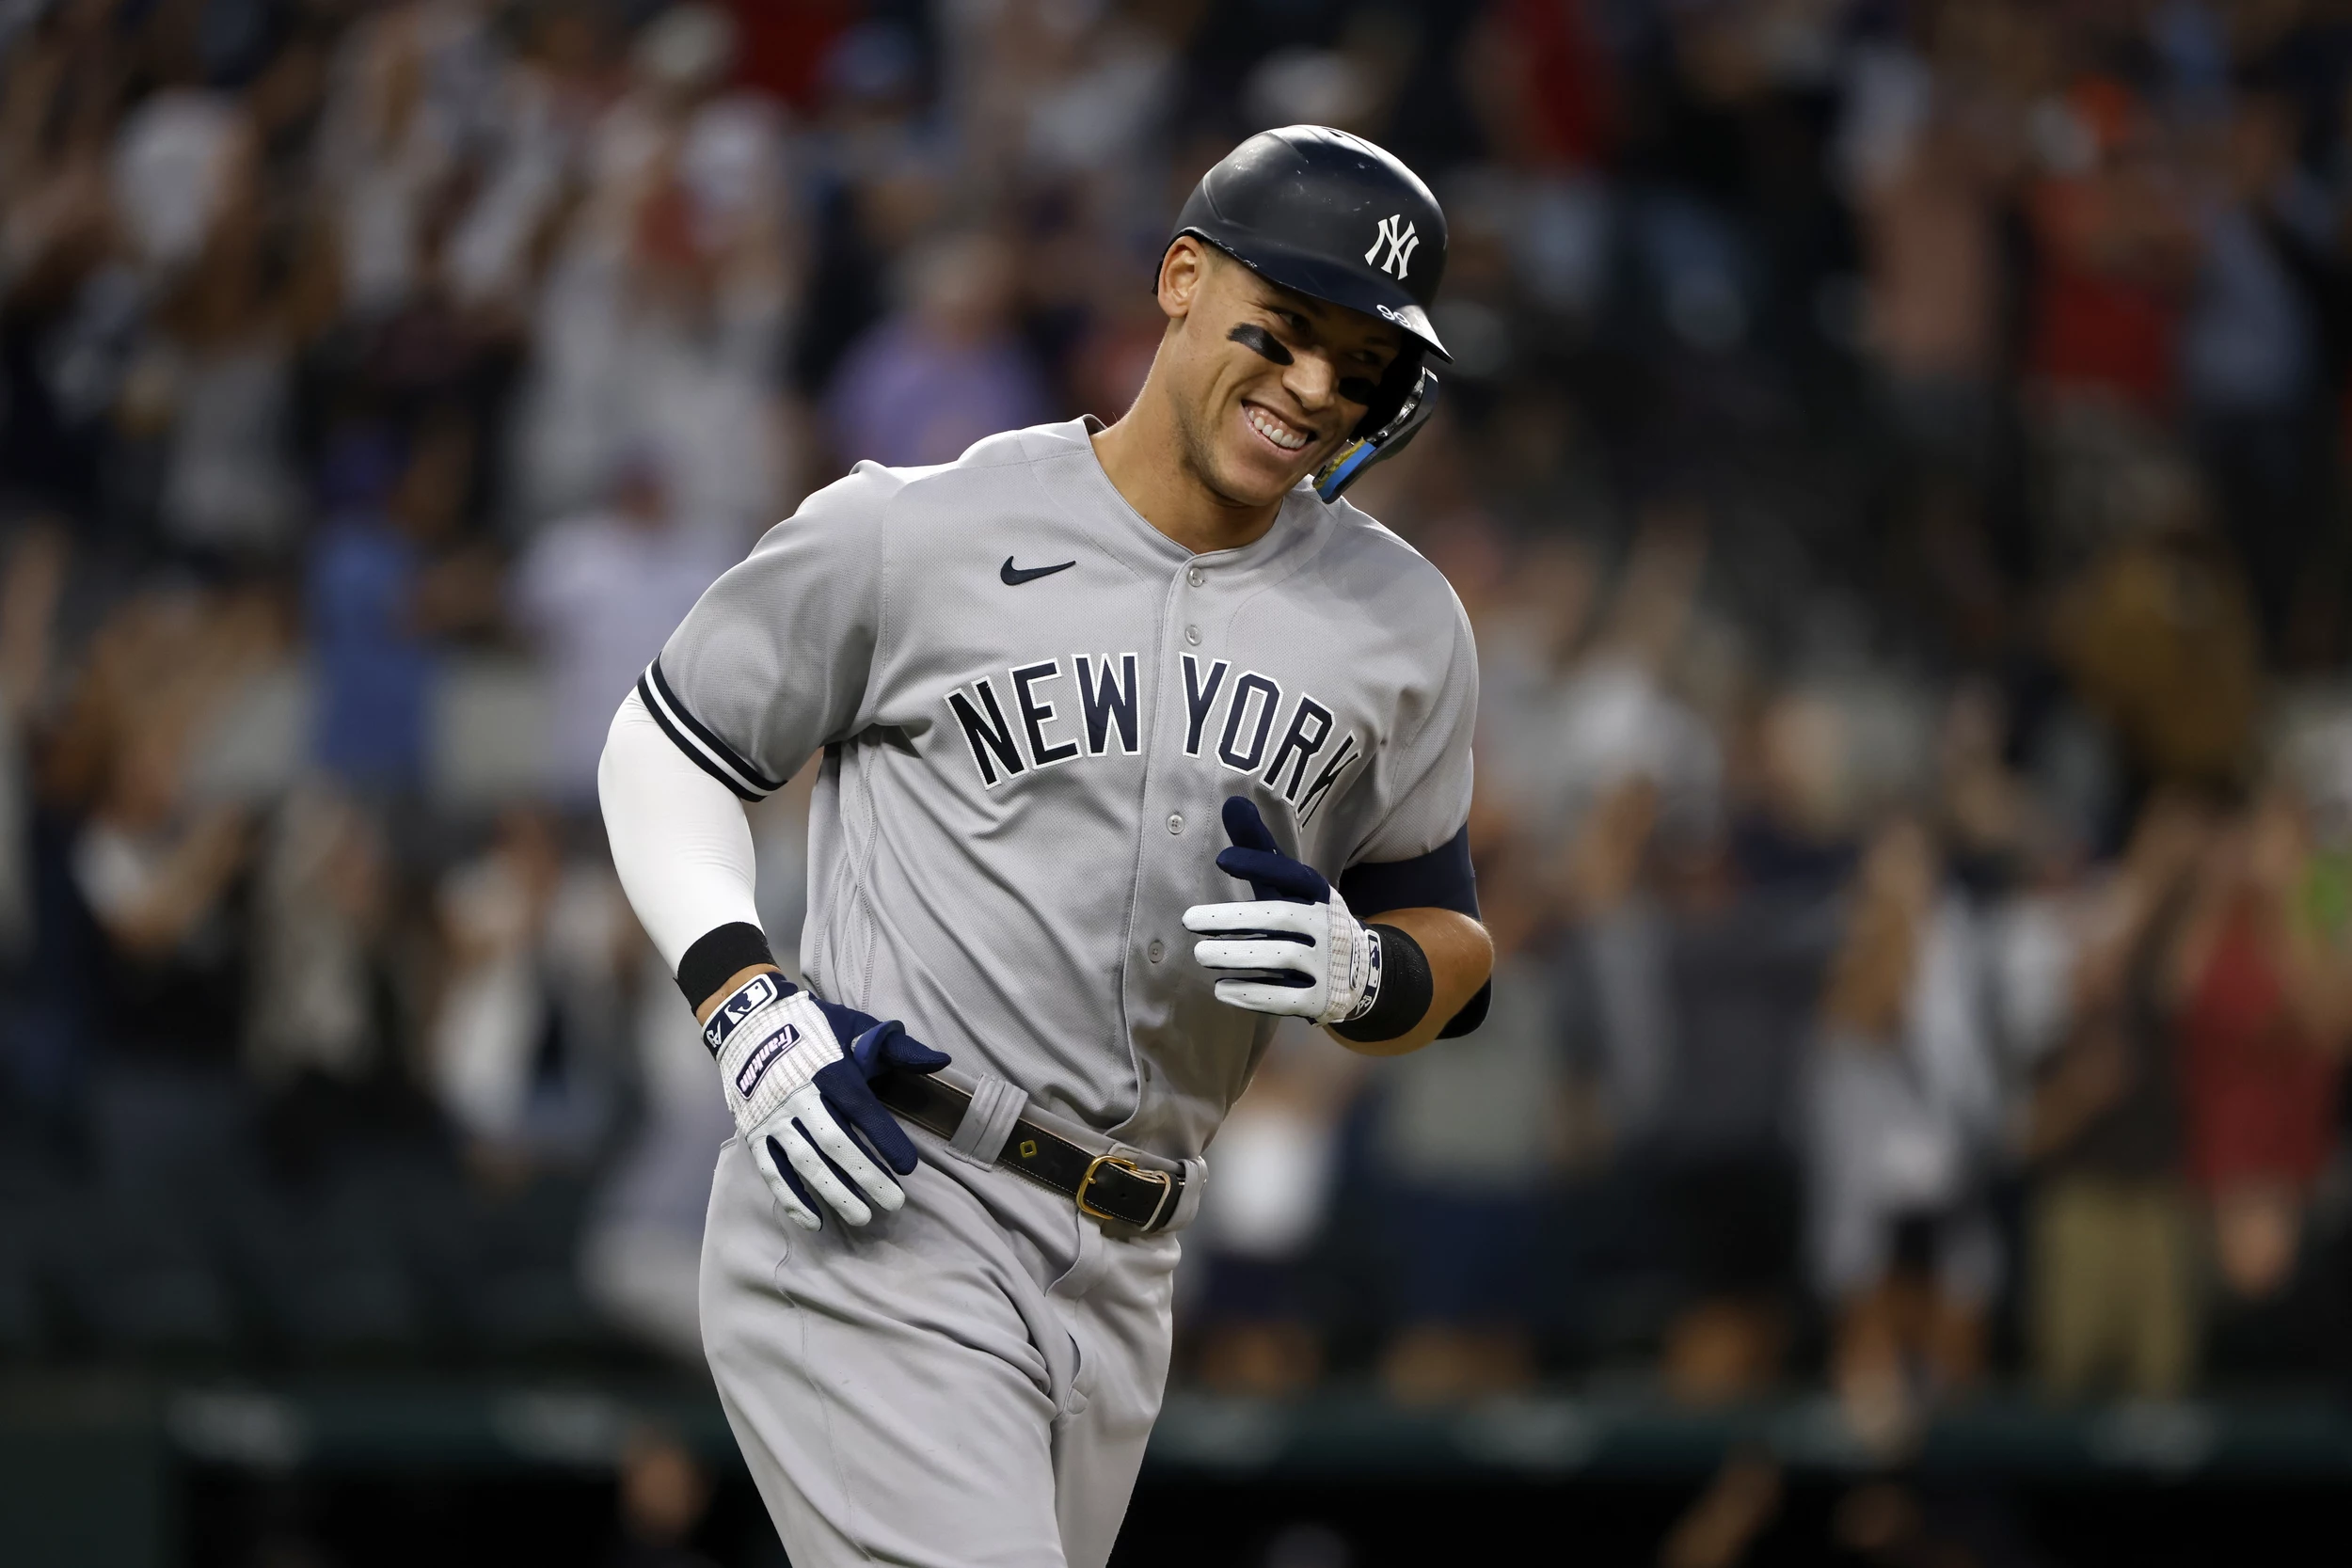 Yankees: Aaron Judge entering most pressure-packed season of career